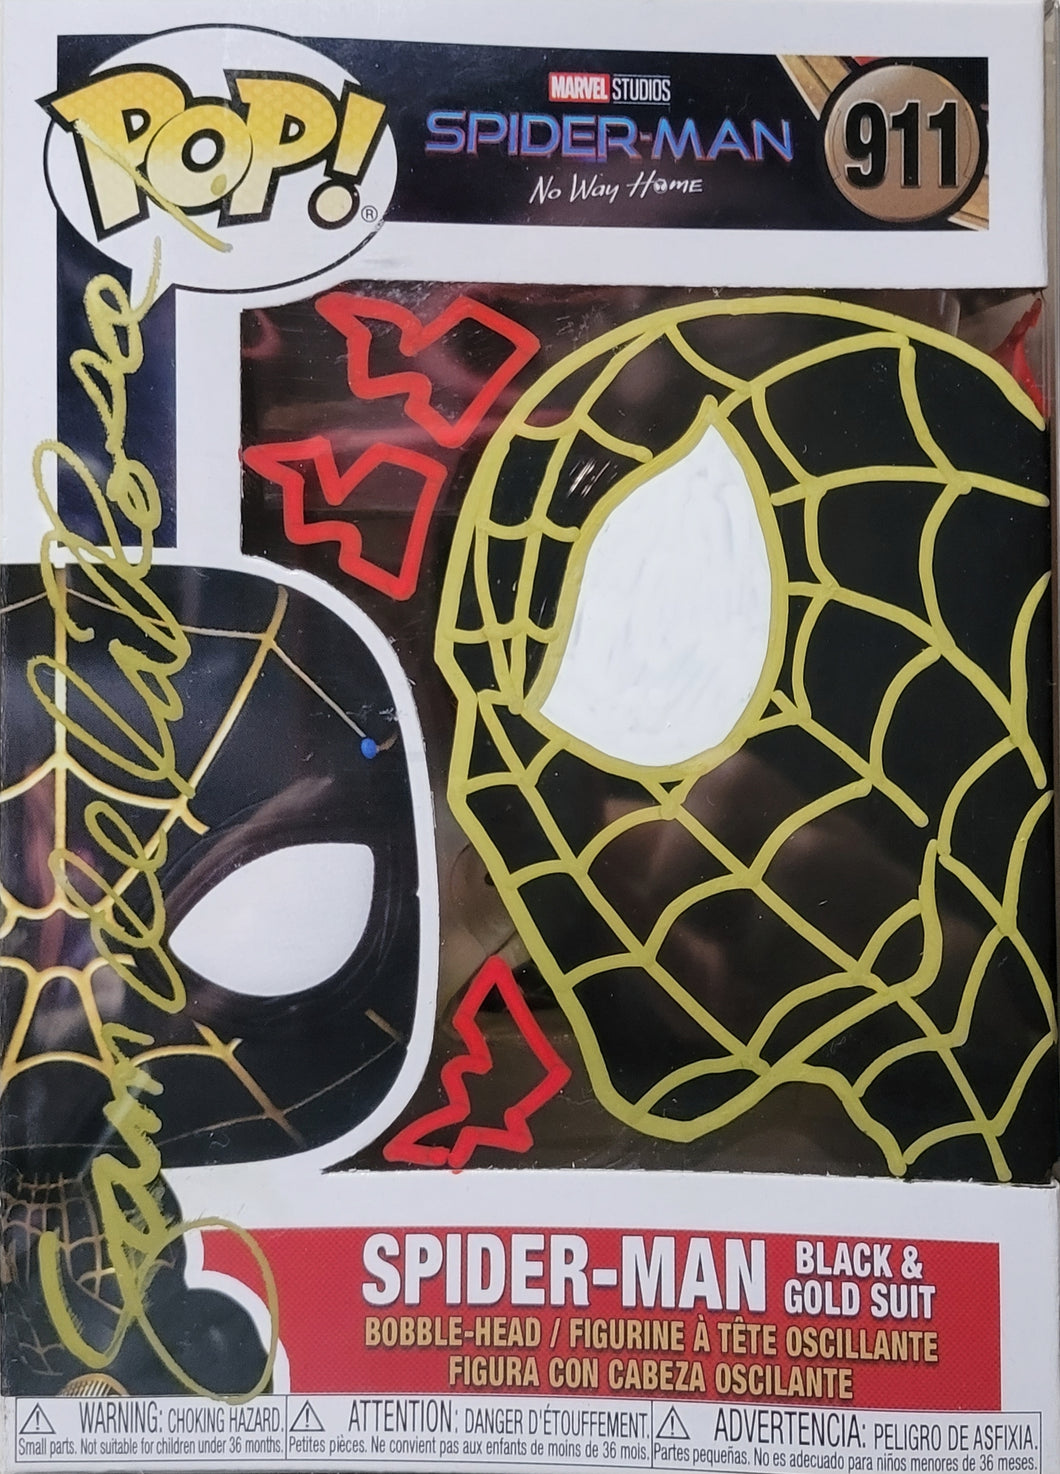 Spider-Man Funko Pop #911 Signed and Remarqued by Sam De La Rosa w/COA